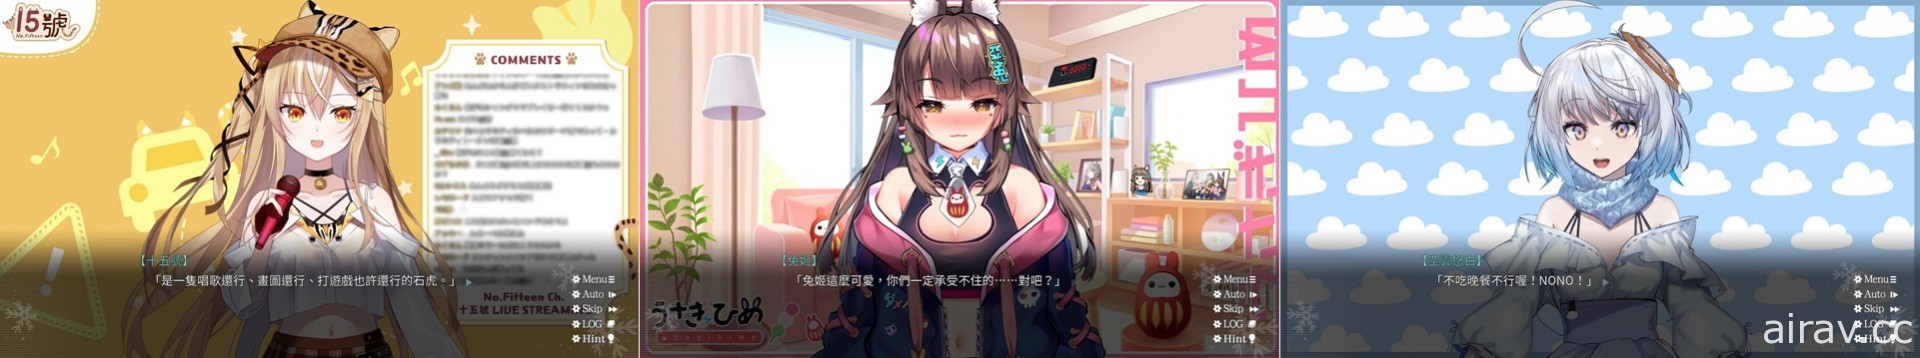 台灣原創戀愛 AVG《花落冬陽》於 Steam 上市 以「夢想」與「思念」為主題的文字冒險遊戲